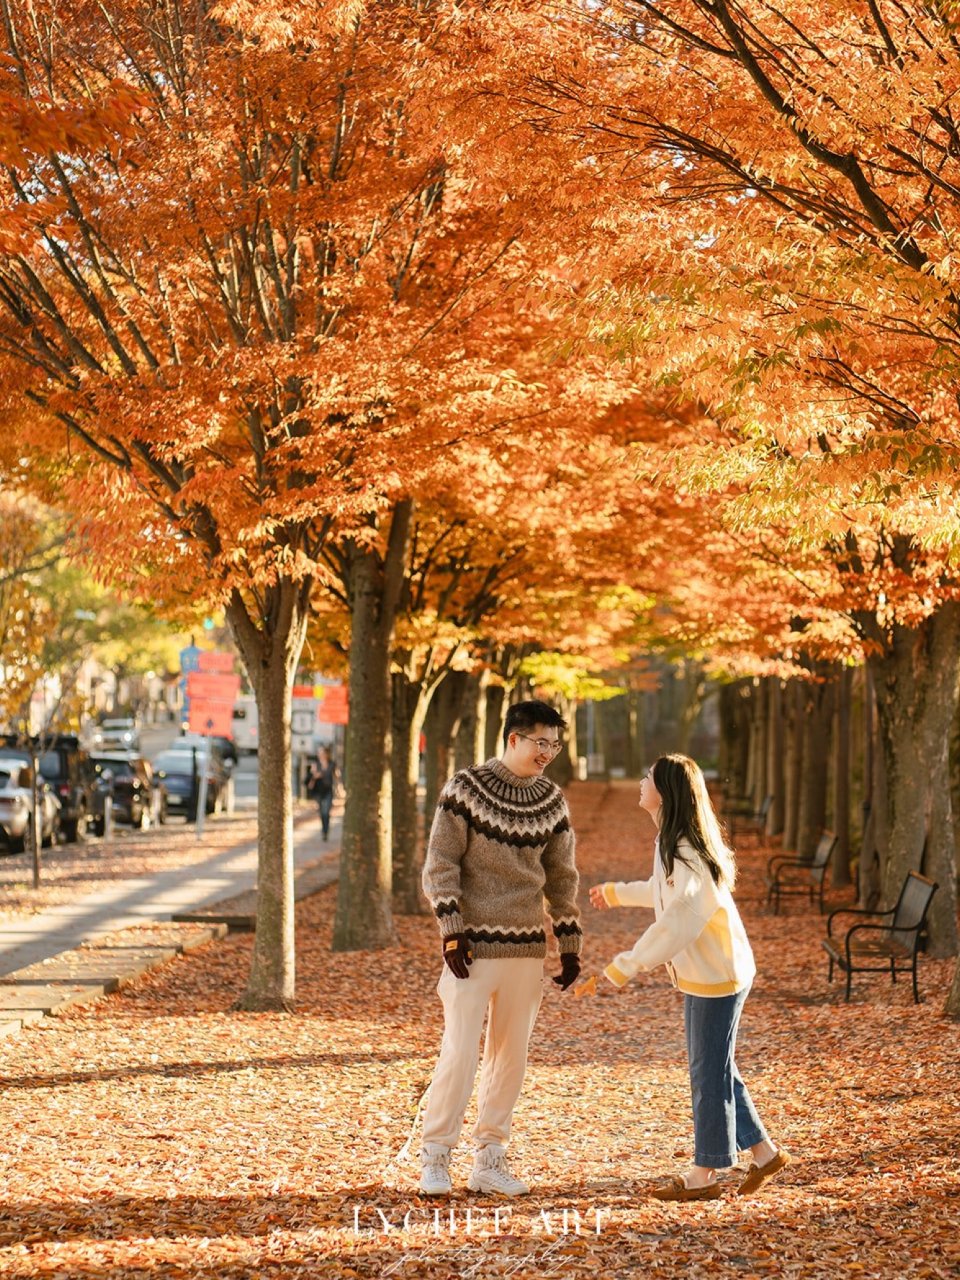 普林斯顿校园的秋天🍂拍到了日漫中的风景...